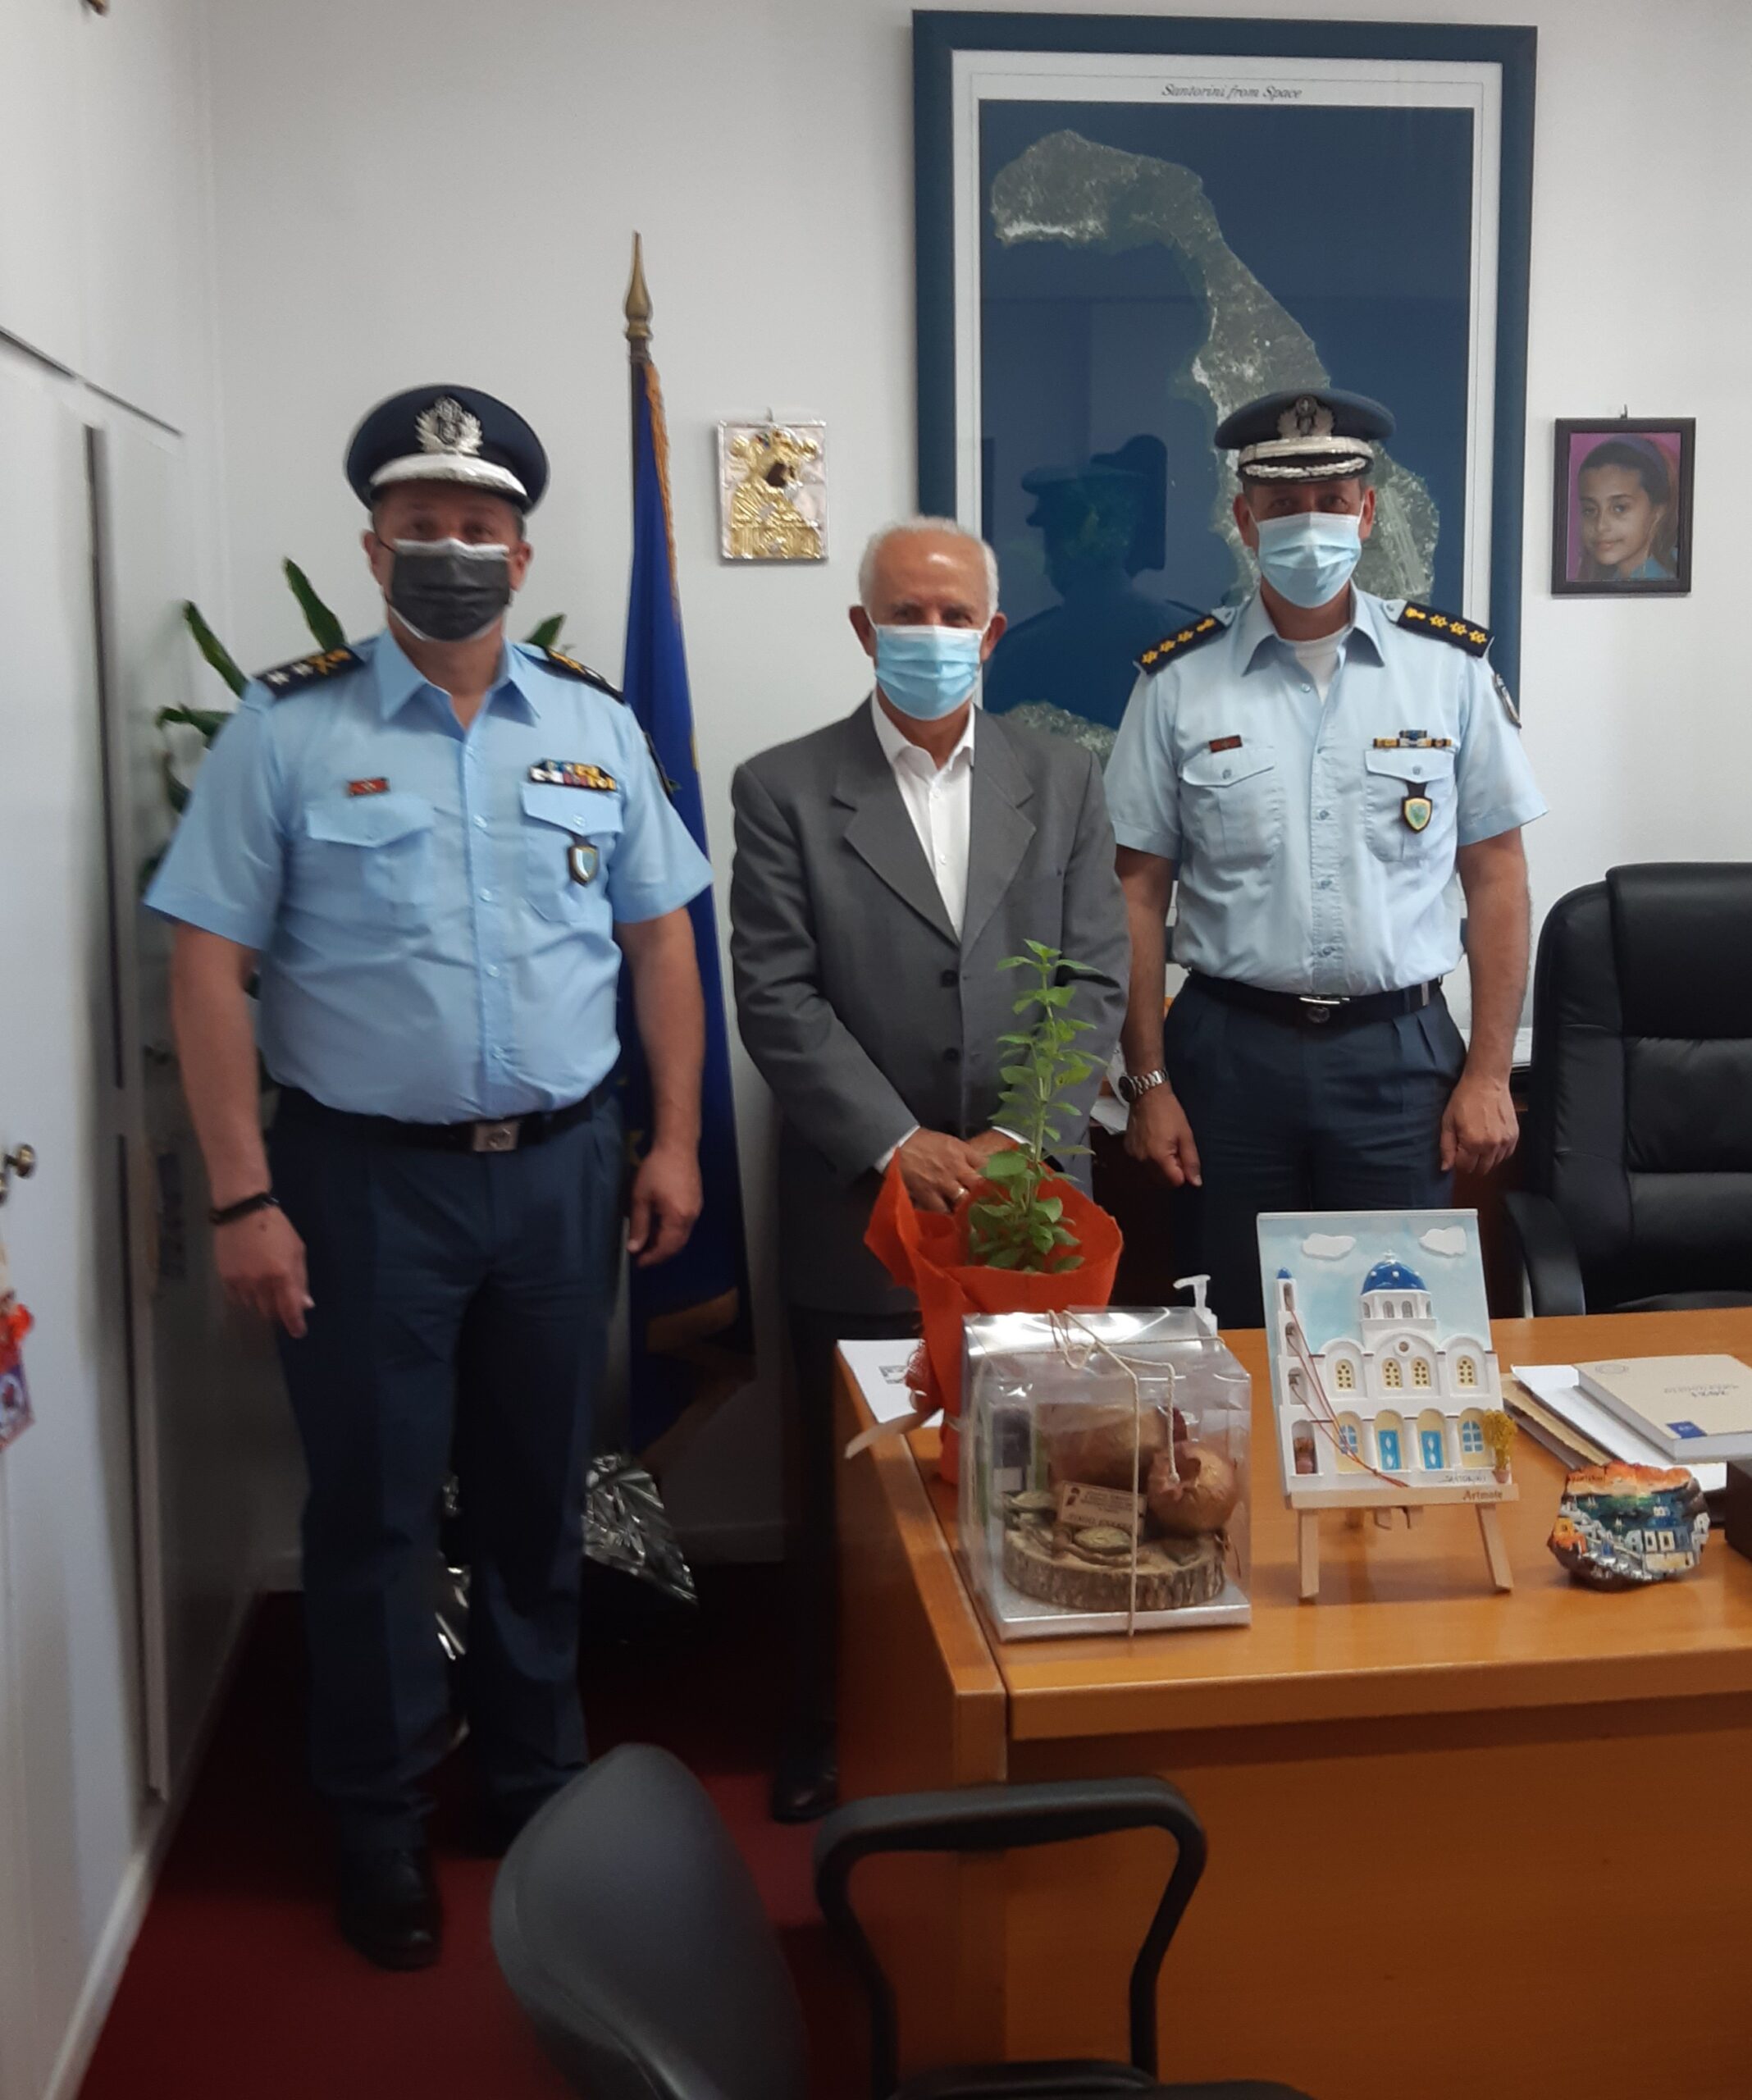 Η ηγεσία της αστυνομίας Νοτίου Αιγαίου επισκέφθηκε τον Έπαρχο κ. Χ.Δαρζέντα